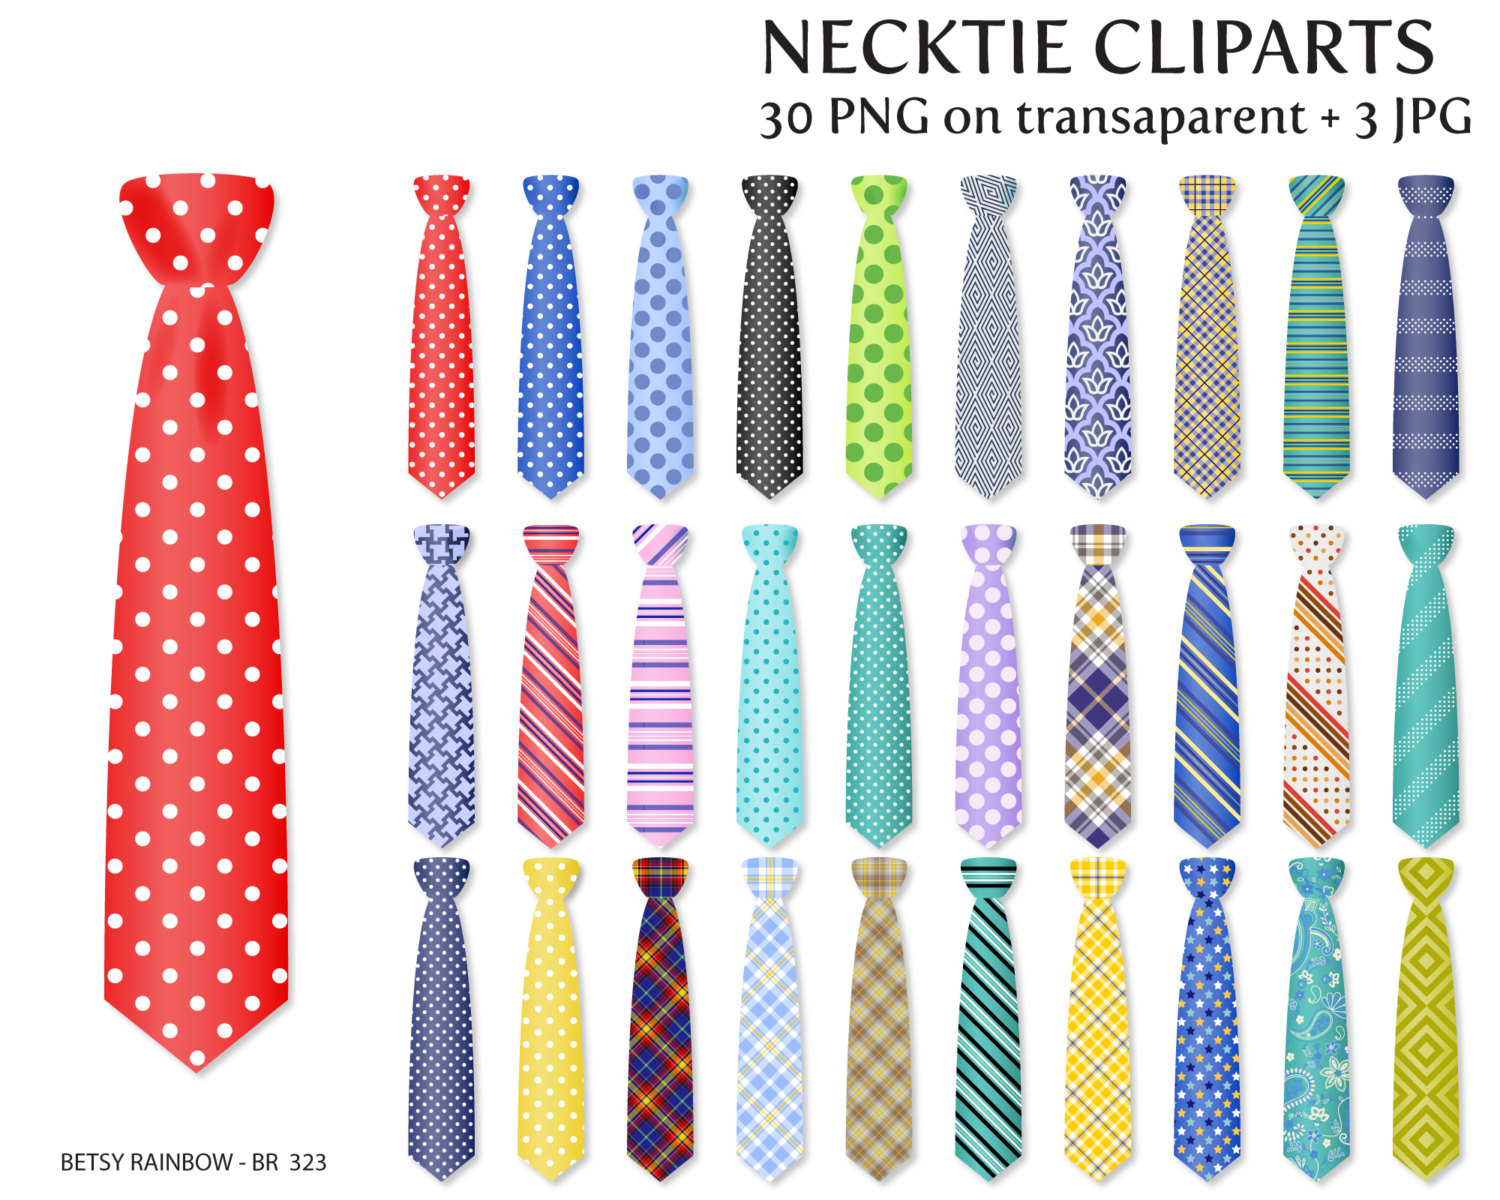 Necktie cliparts PNG and JPG, tie clipart, necktie, little man, boy - BR 323